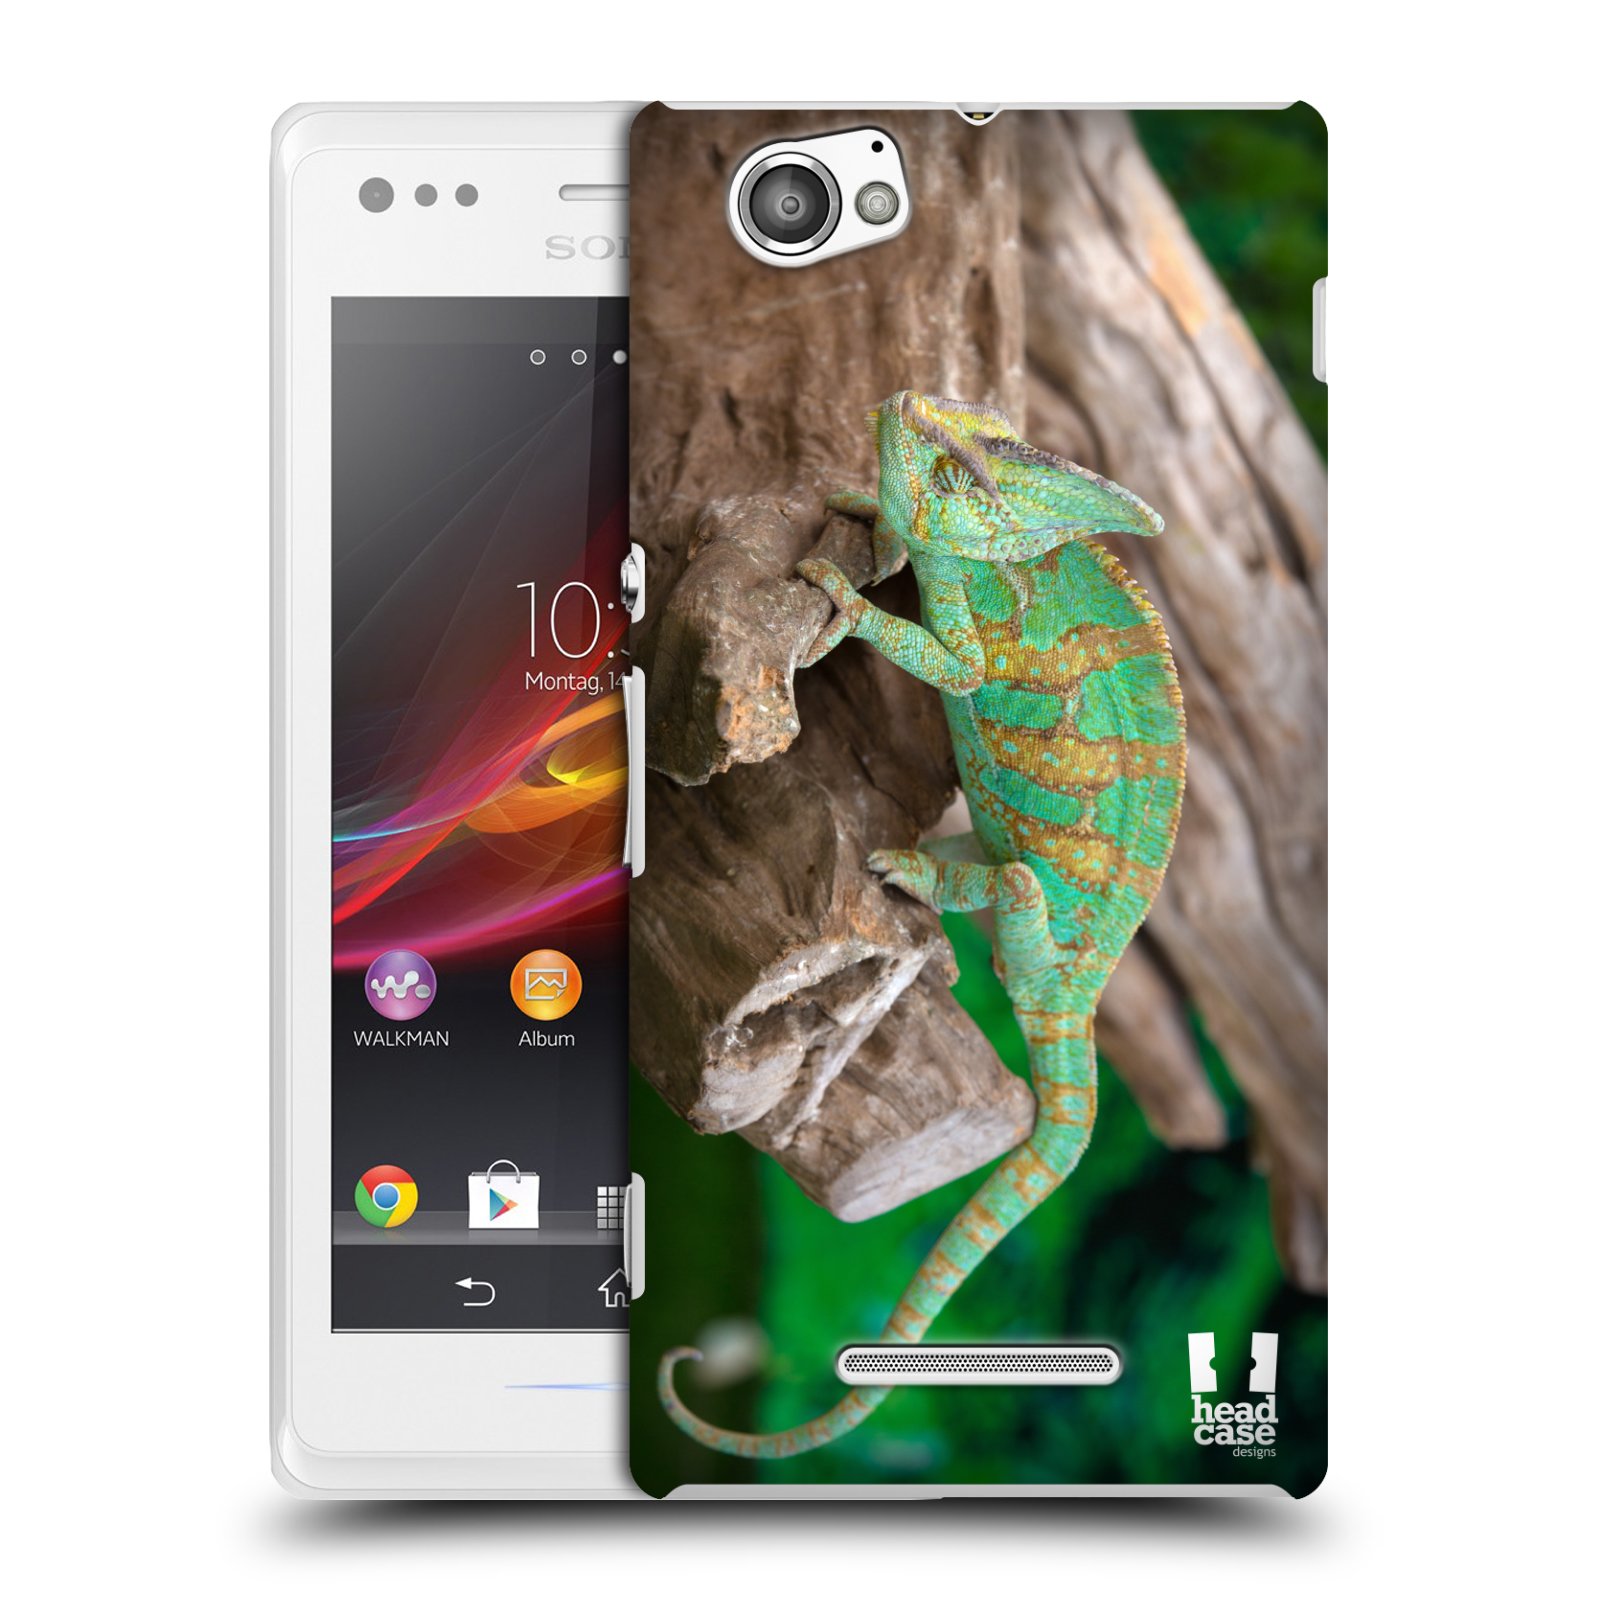 HEAD CASE plastový obal na mobil Sony Xperia M vzor slavná zvířata foto chameleon